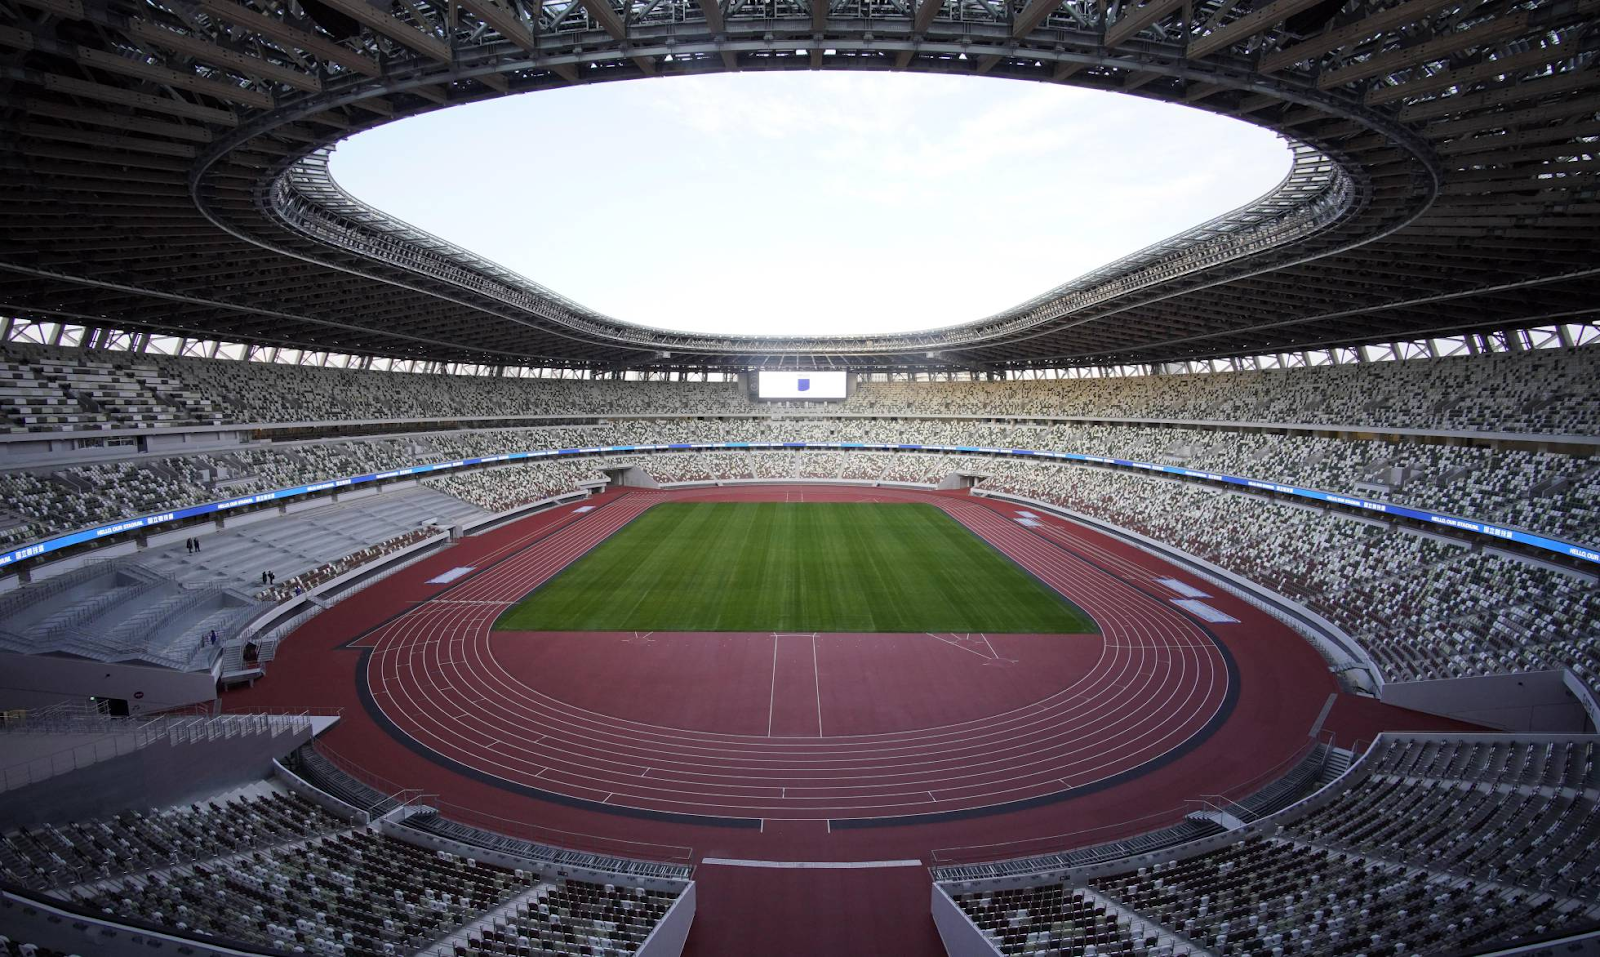 ¿Conoces el Estadio Olímpico de Tokio 2020?